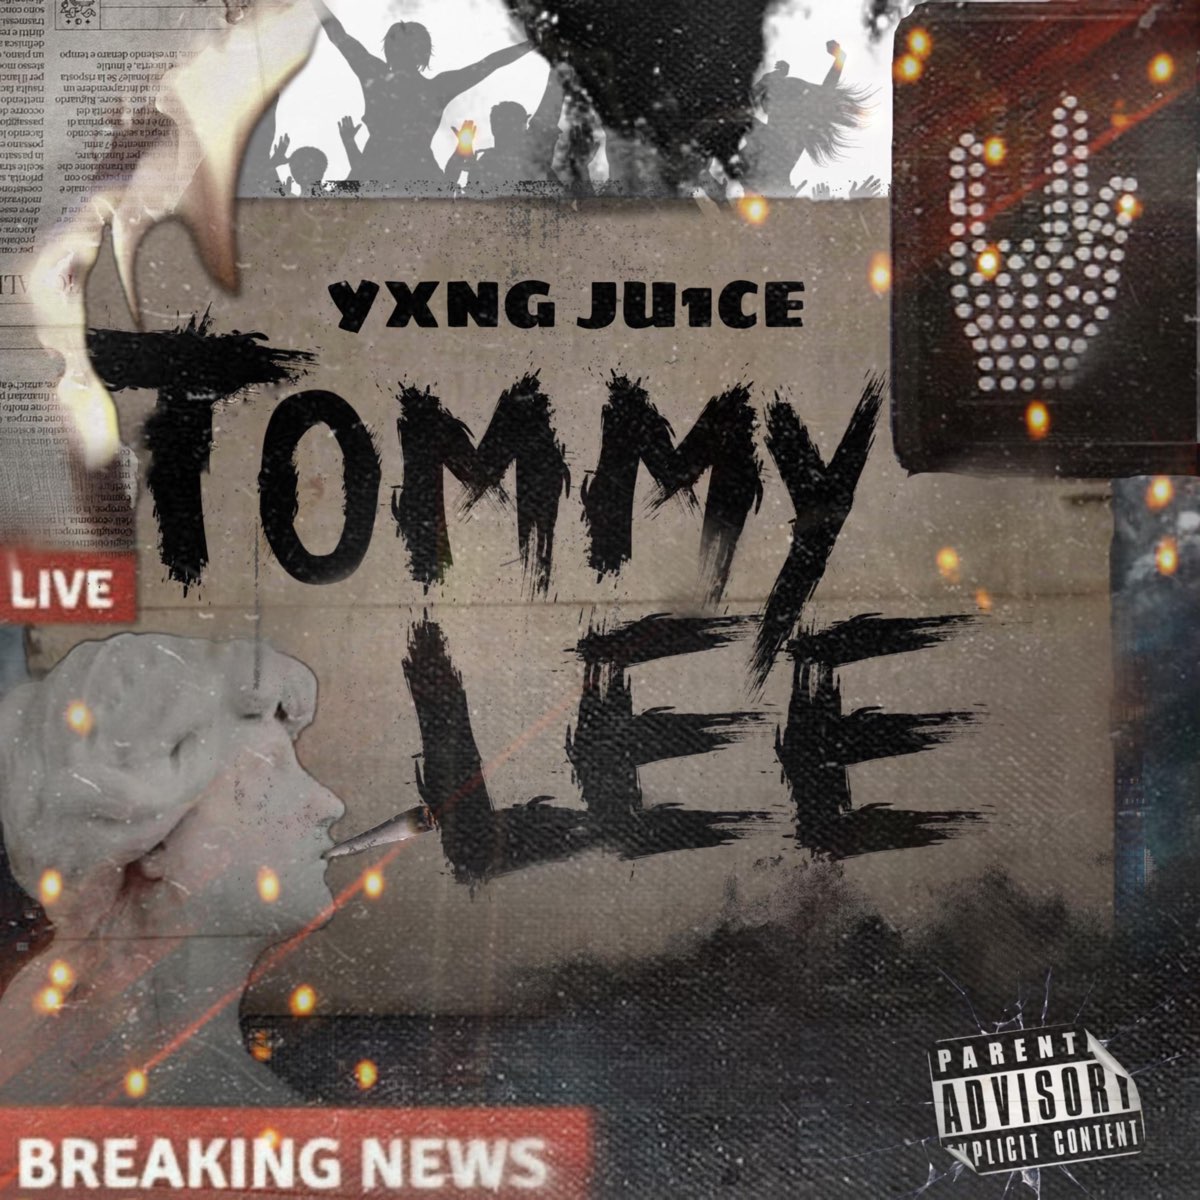 Tommy Lee - Single - Album by Yxng Ju1ce - Apple Music